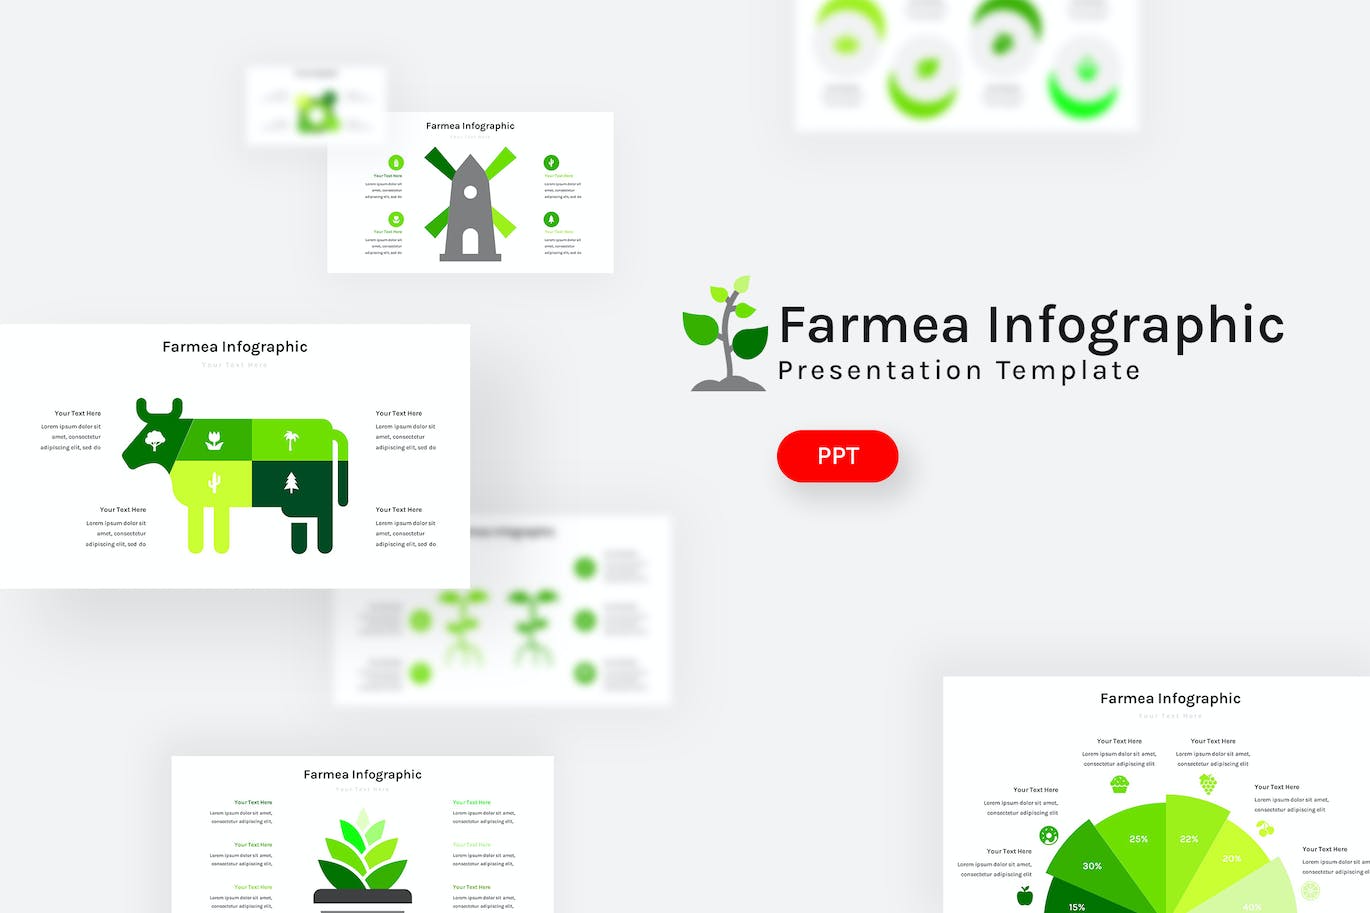 农牧场数据图表PowerPoint演示文稿模板 Farmea Infographic – Powerpoint Template 幻灯图表 第1张